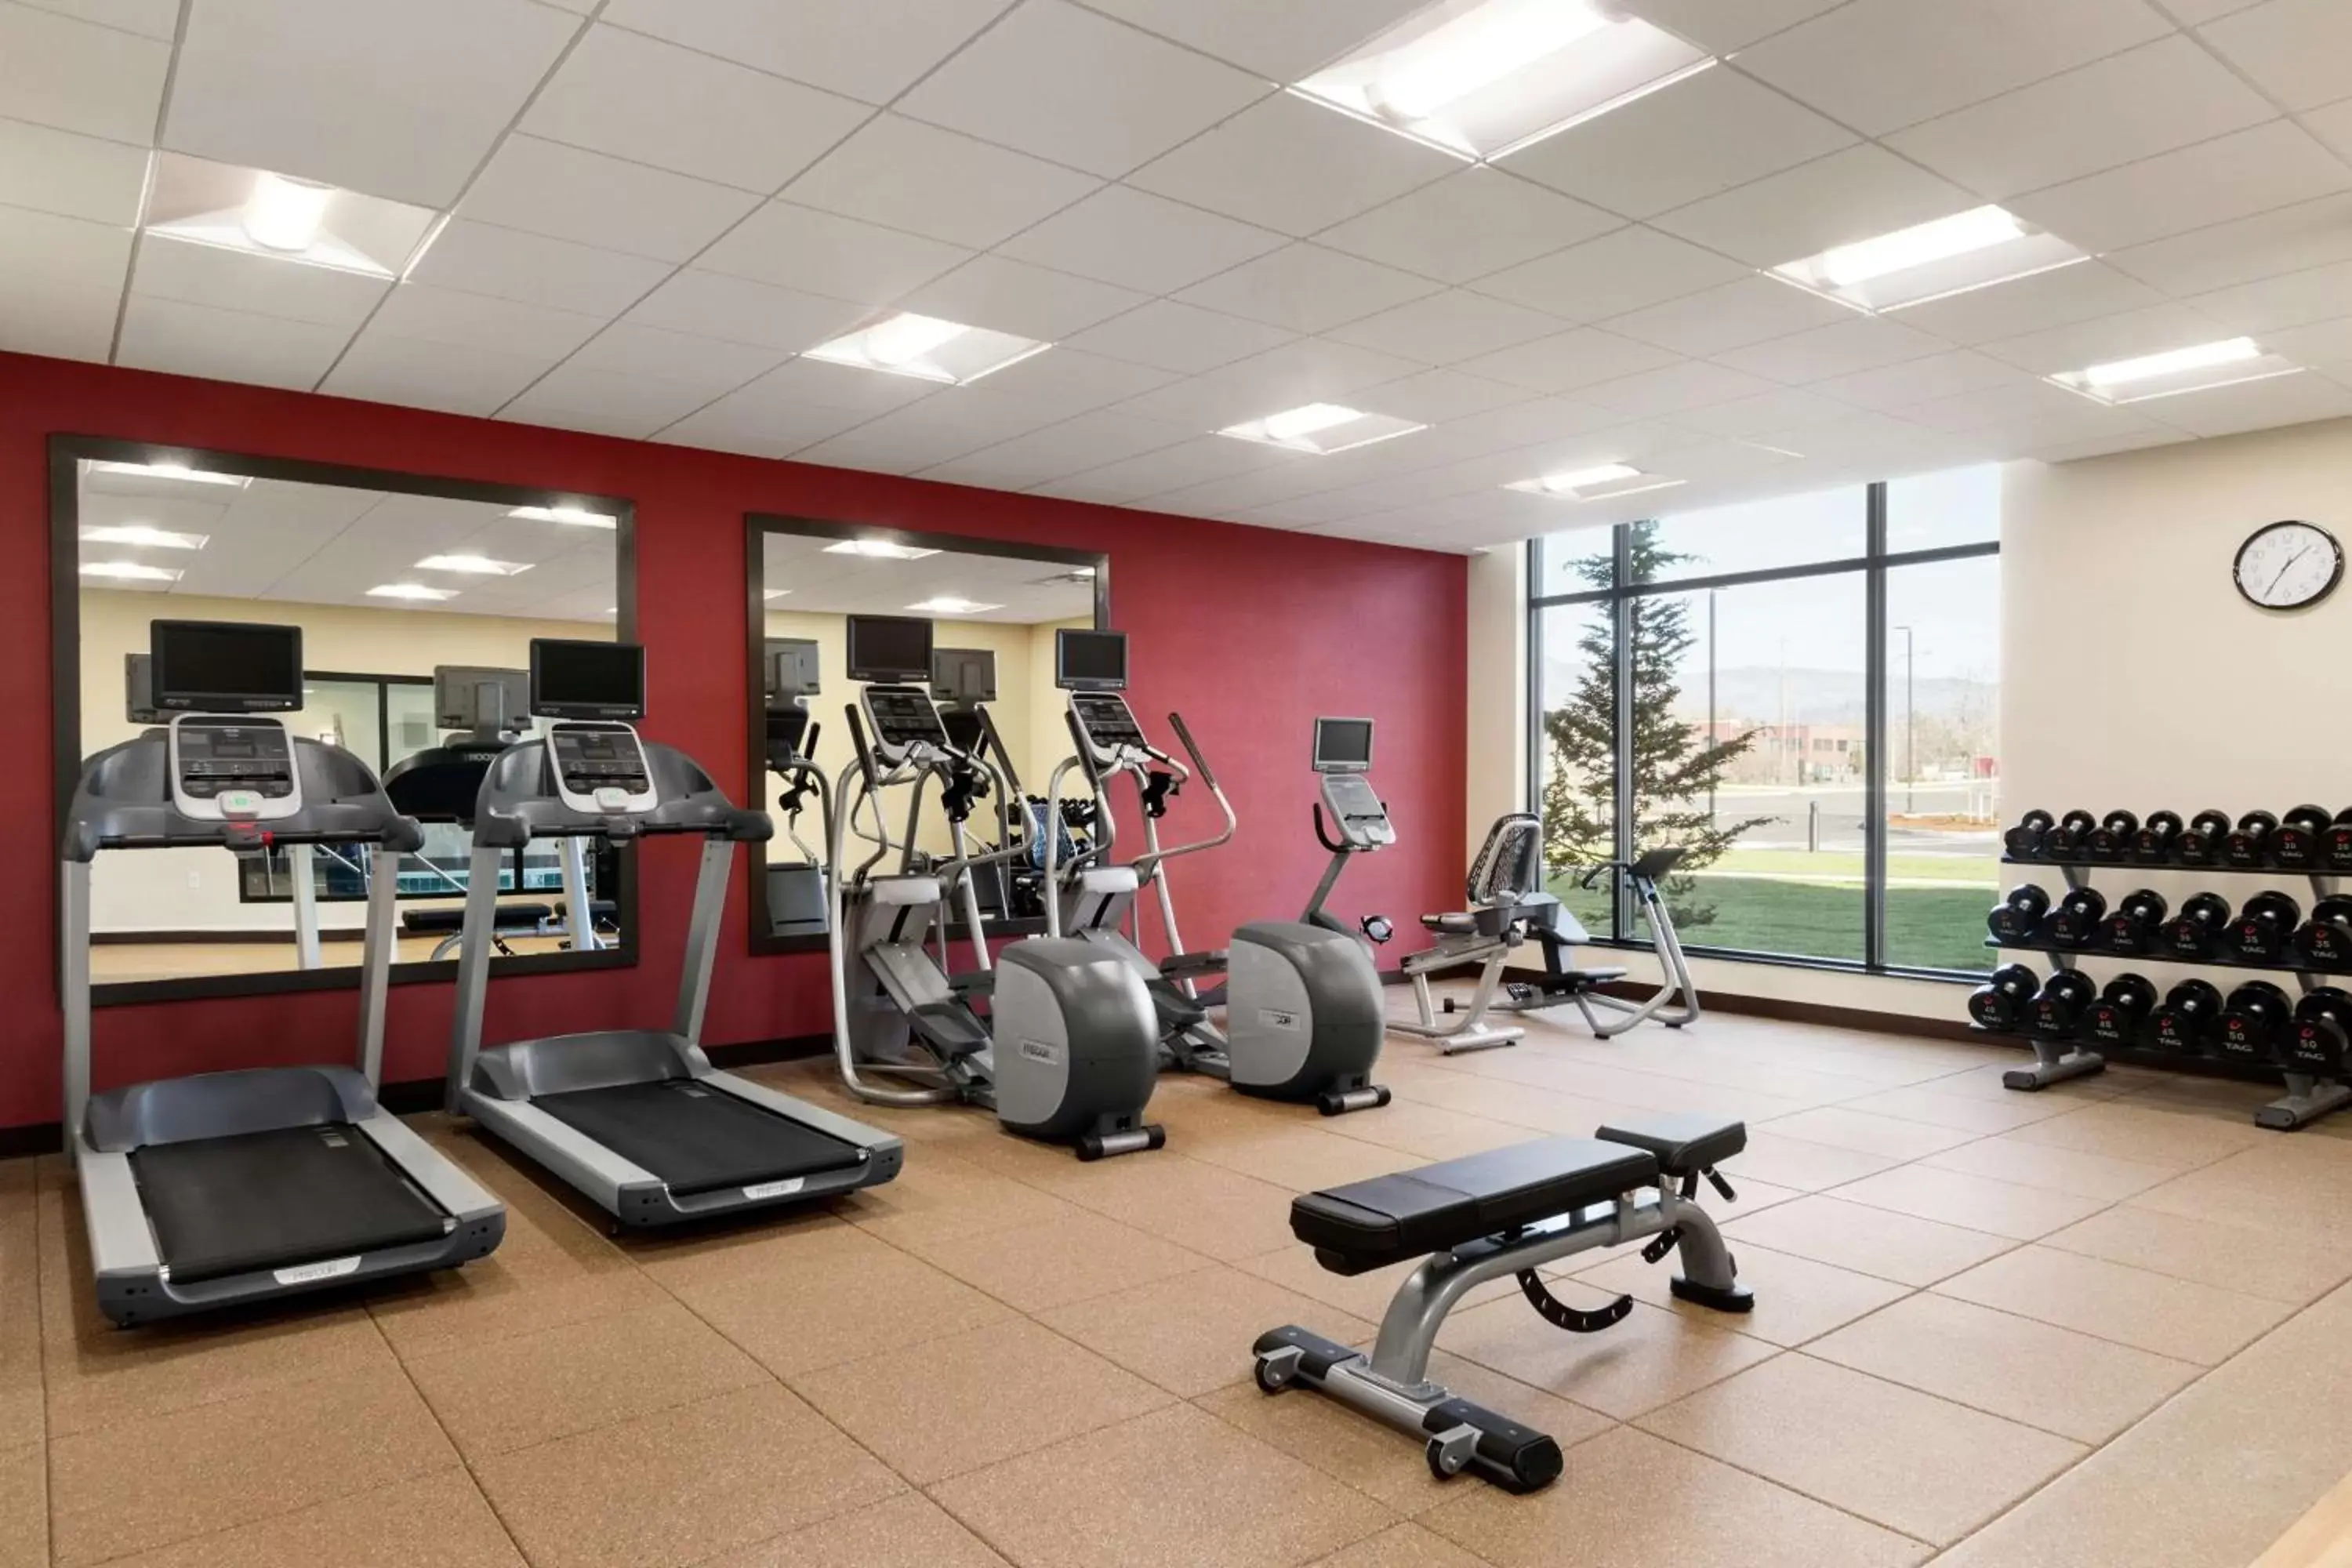 Fitness centre/facilities, Fitness Center/Facilities in Hilton Garden Inn Medford